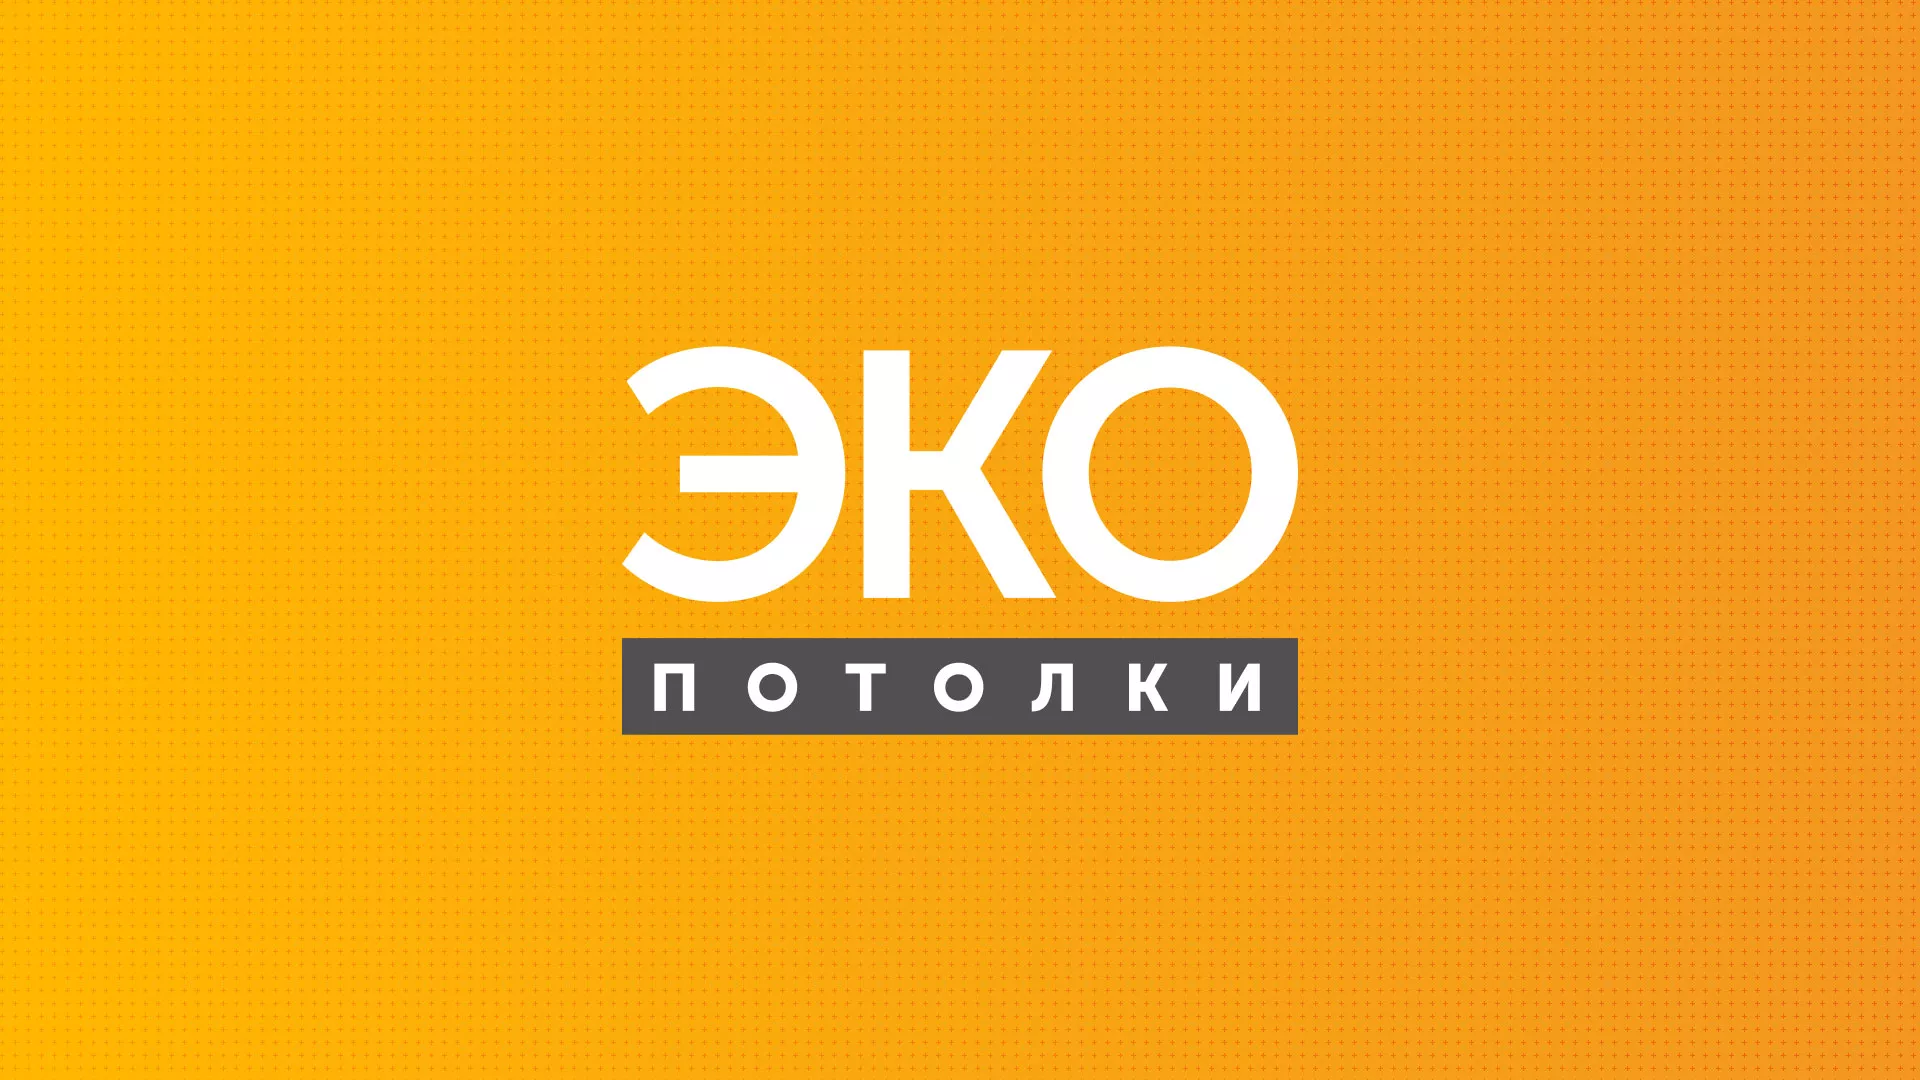 Разработка сайта по натяжным потолкам «Эко Потолки» в Алексеевке